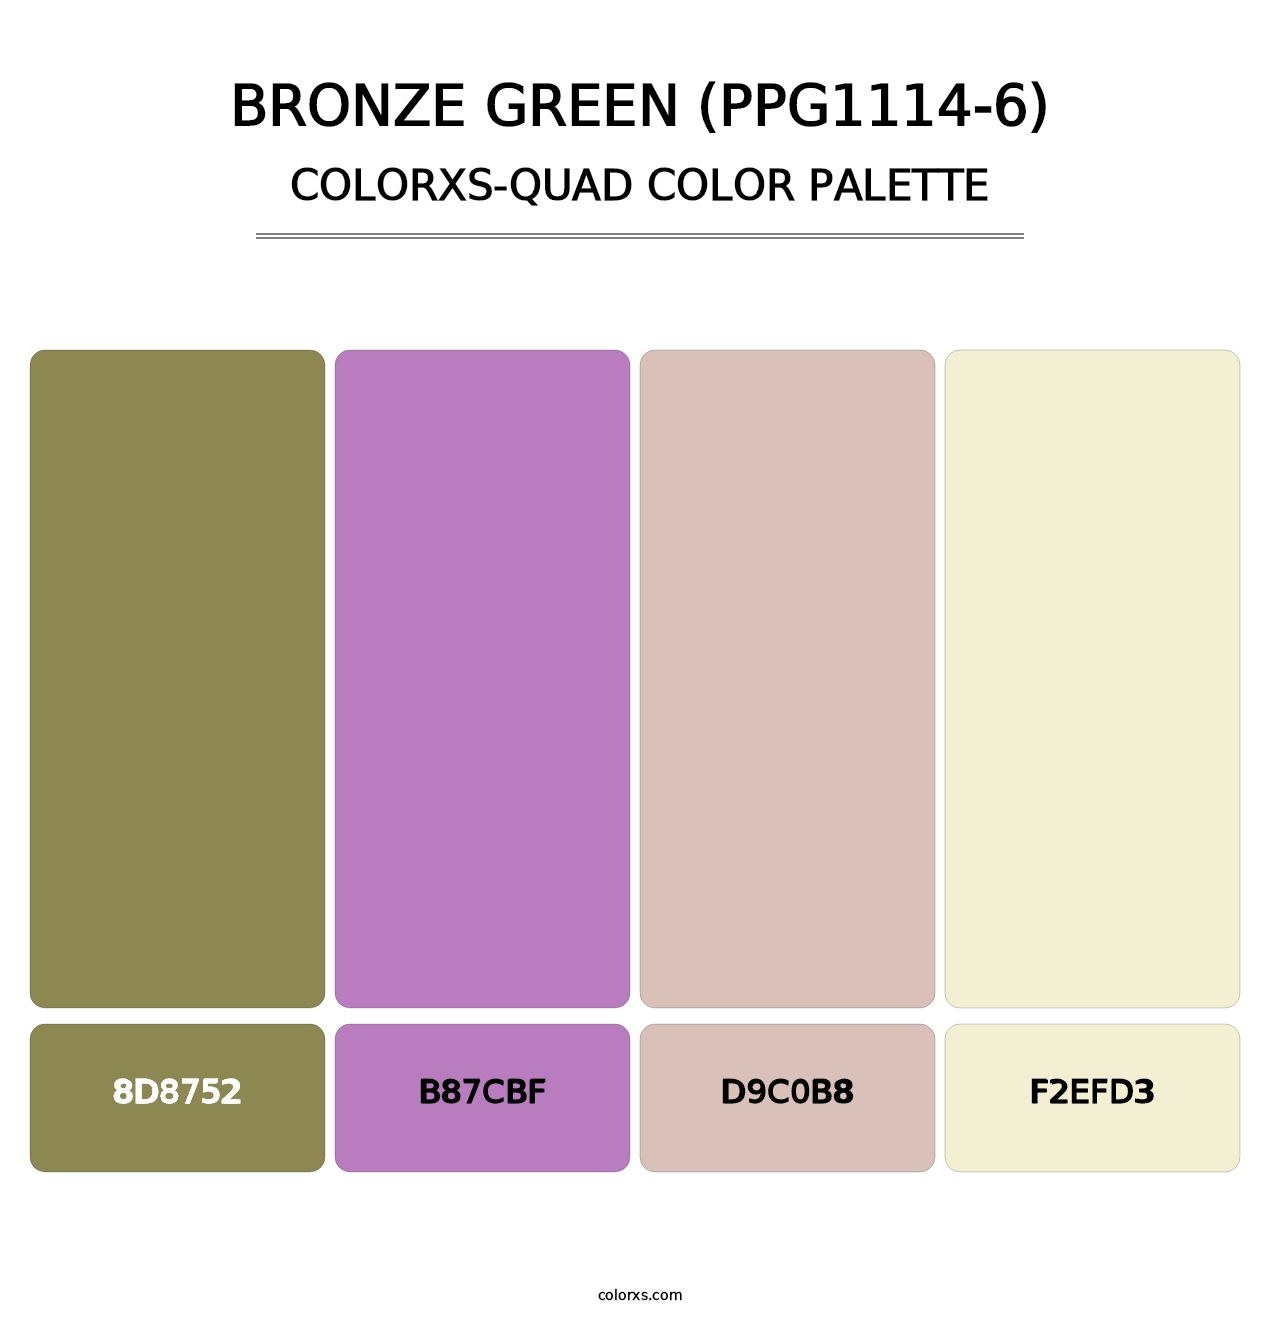 Bronze Green (PPG1114-6) - Colorxs Quad Palette